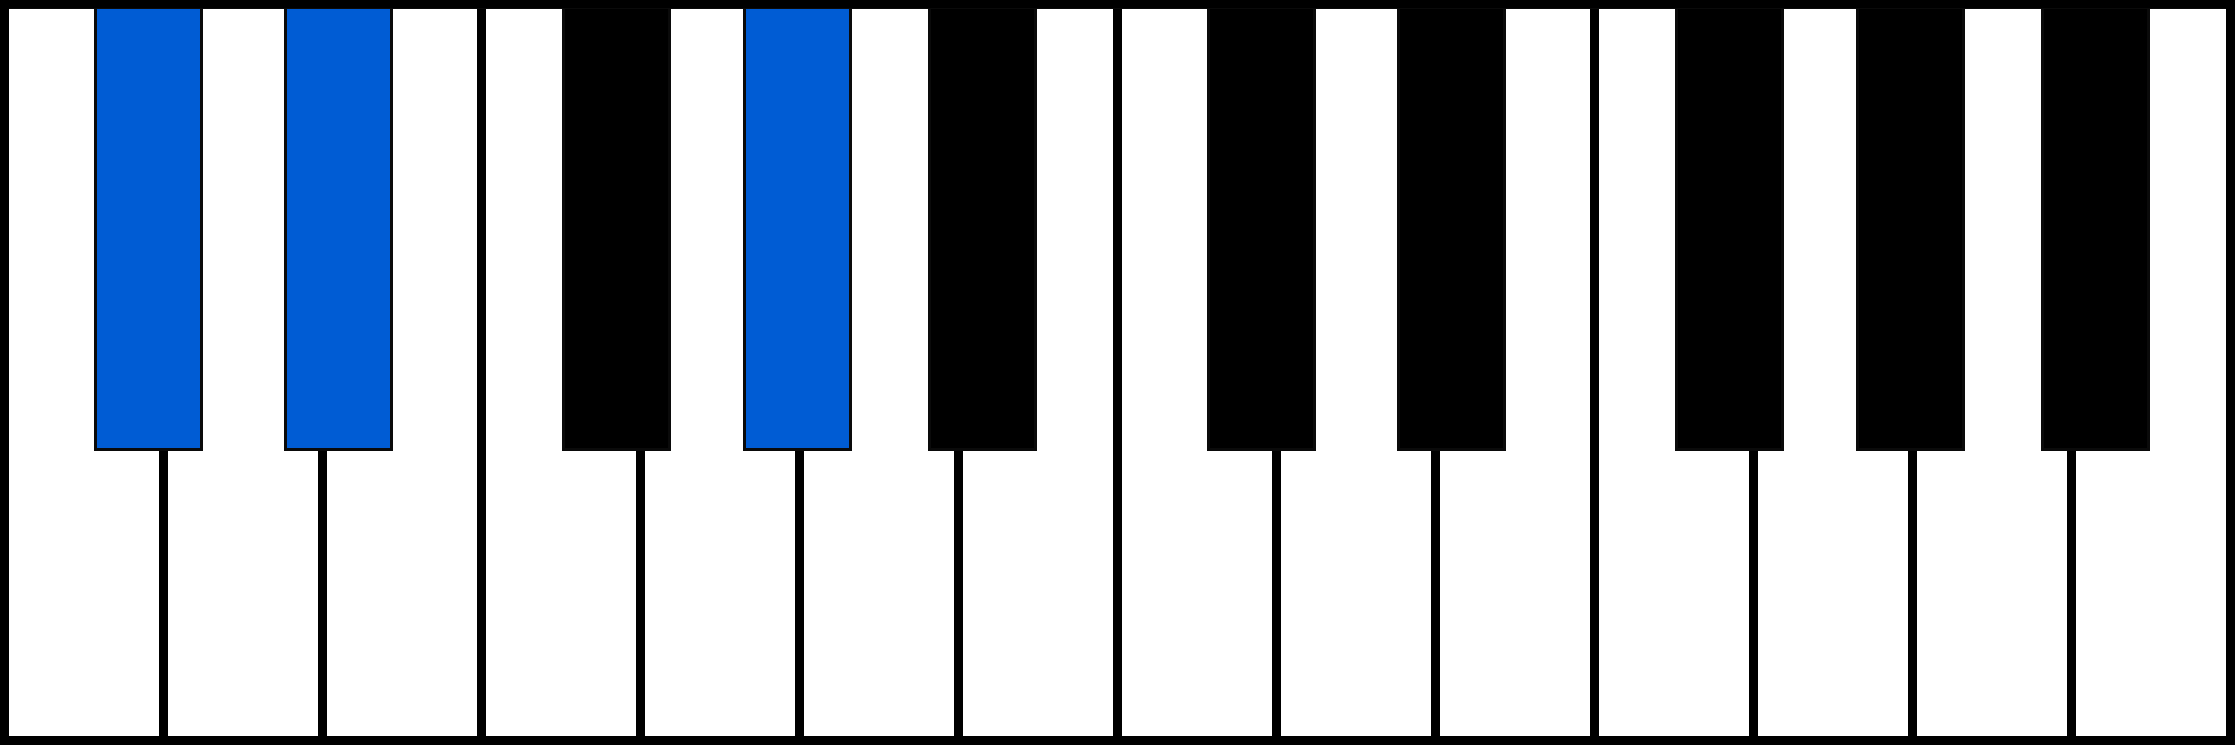 C#sus2 piano chord